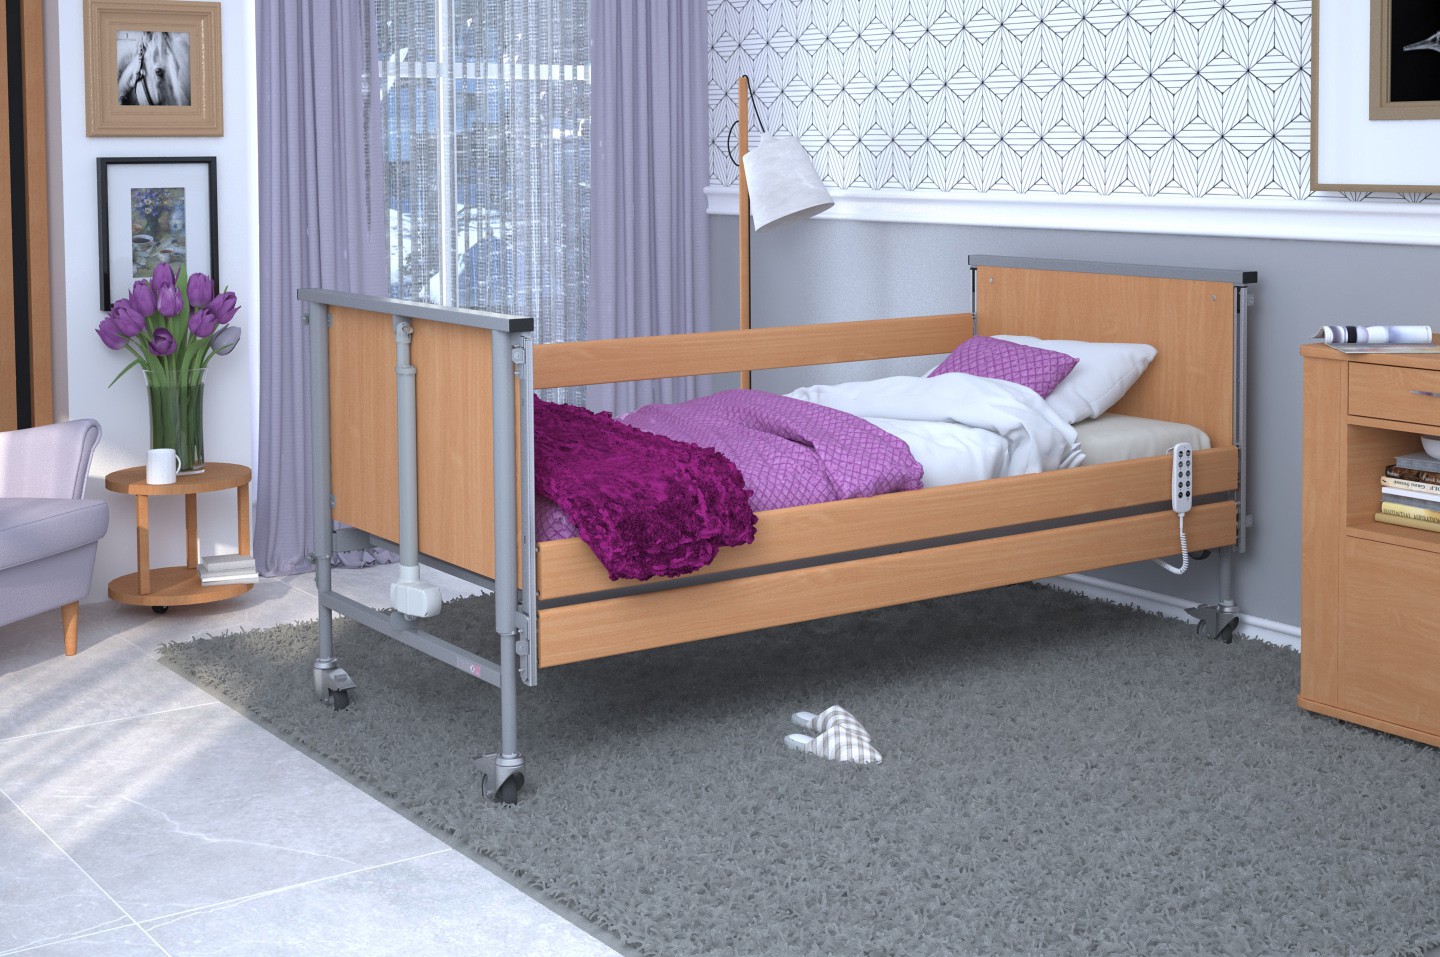 Łóżko rehabilitacyjne TAURUS 2 regulowane RehaBed : Rodzaj leża - Metalowe, Standardowe kolory ramy łóżka - Buk, Stolik typu Tablet: - Tak, Wysięgnik (max odciążenie 80 kg): - Nie